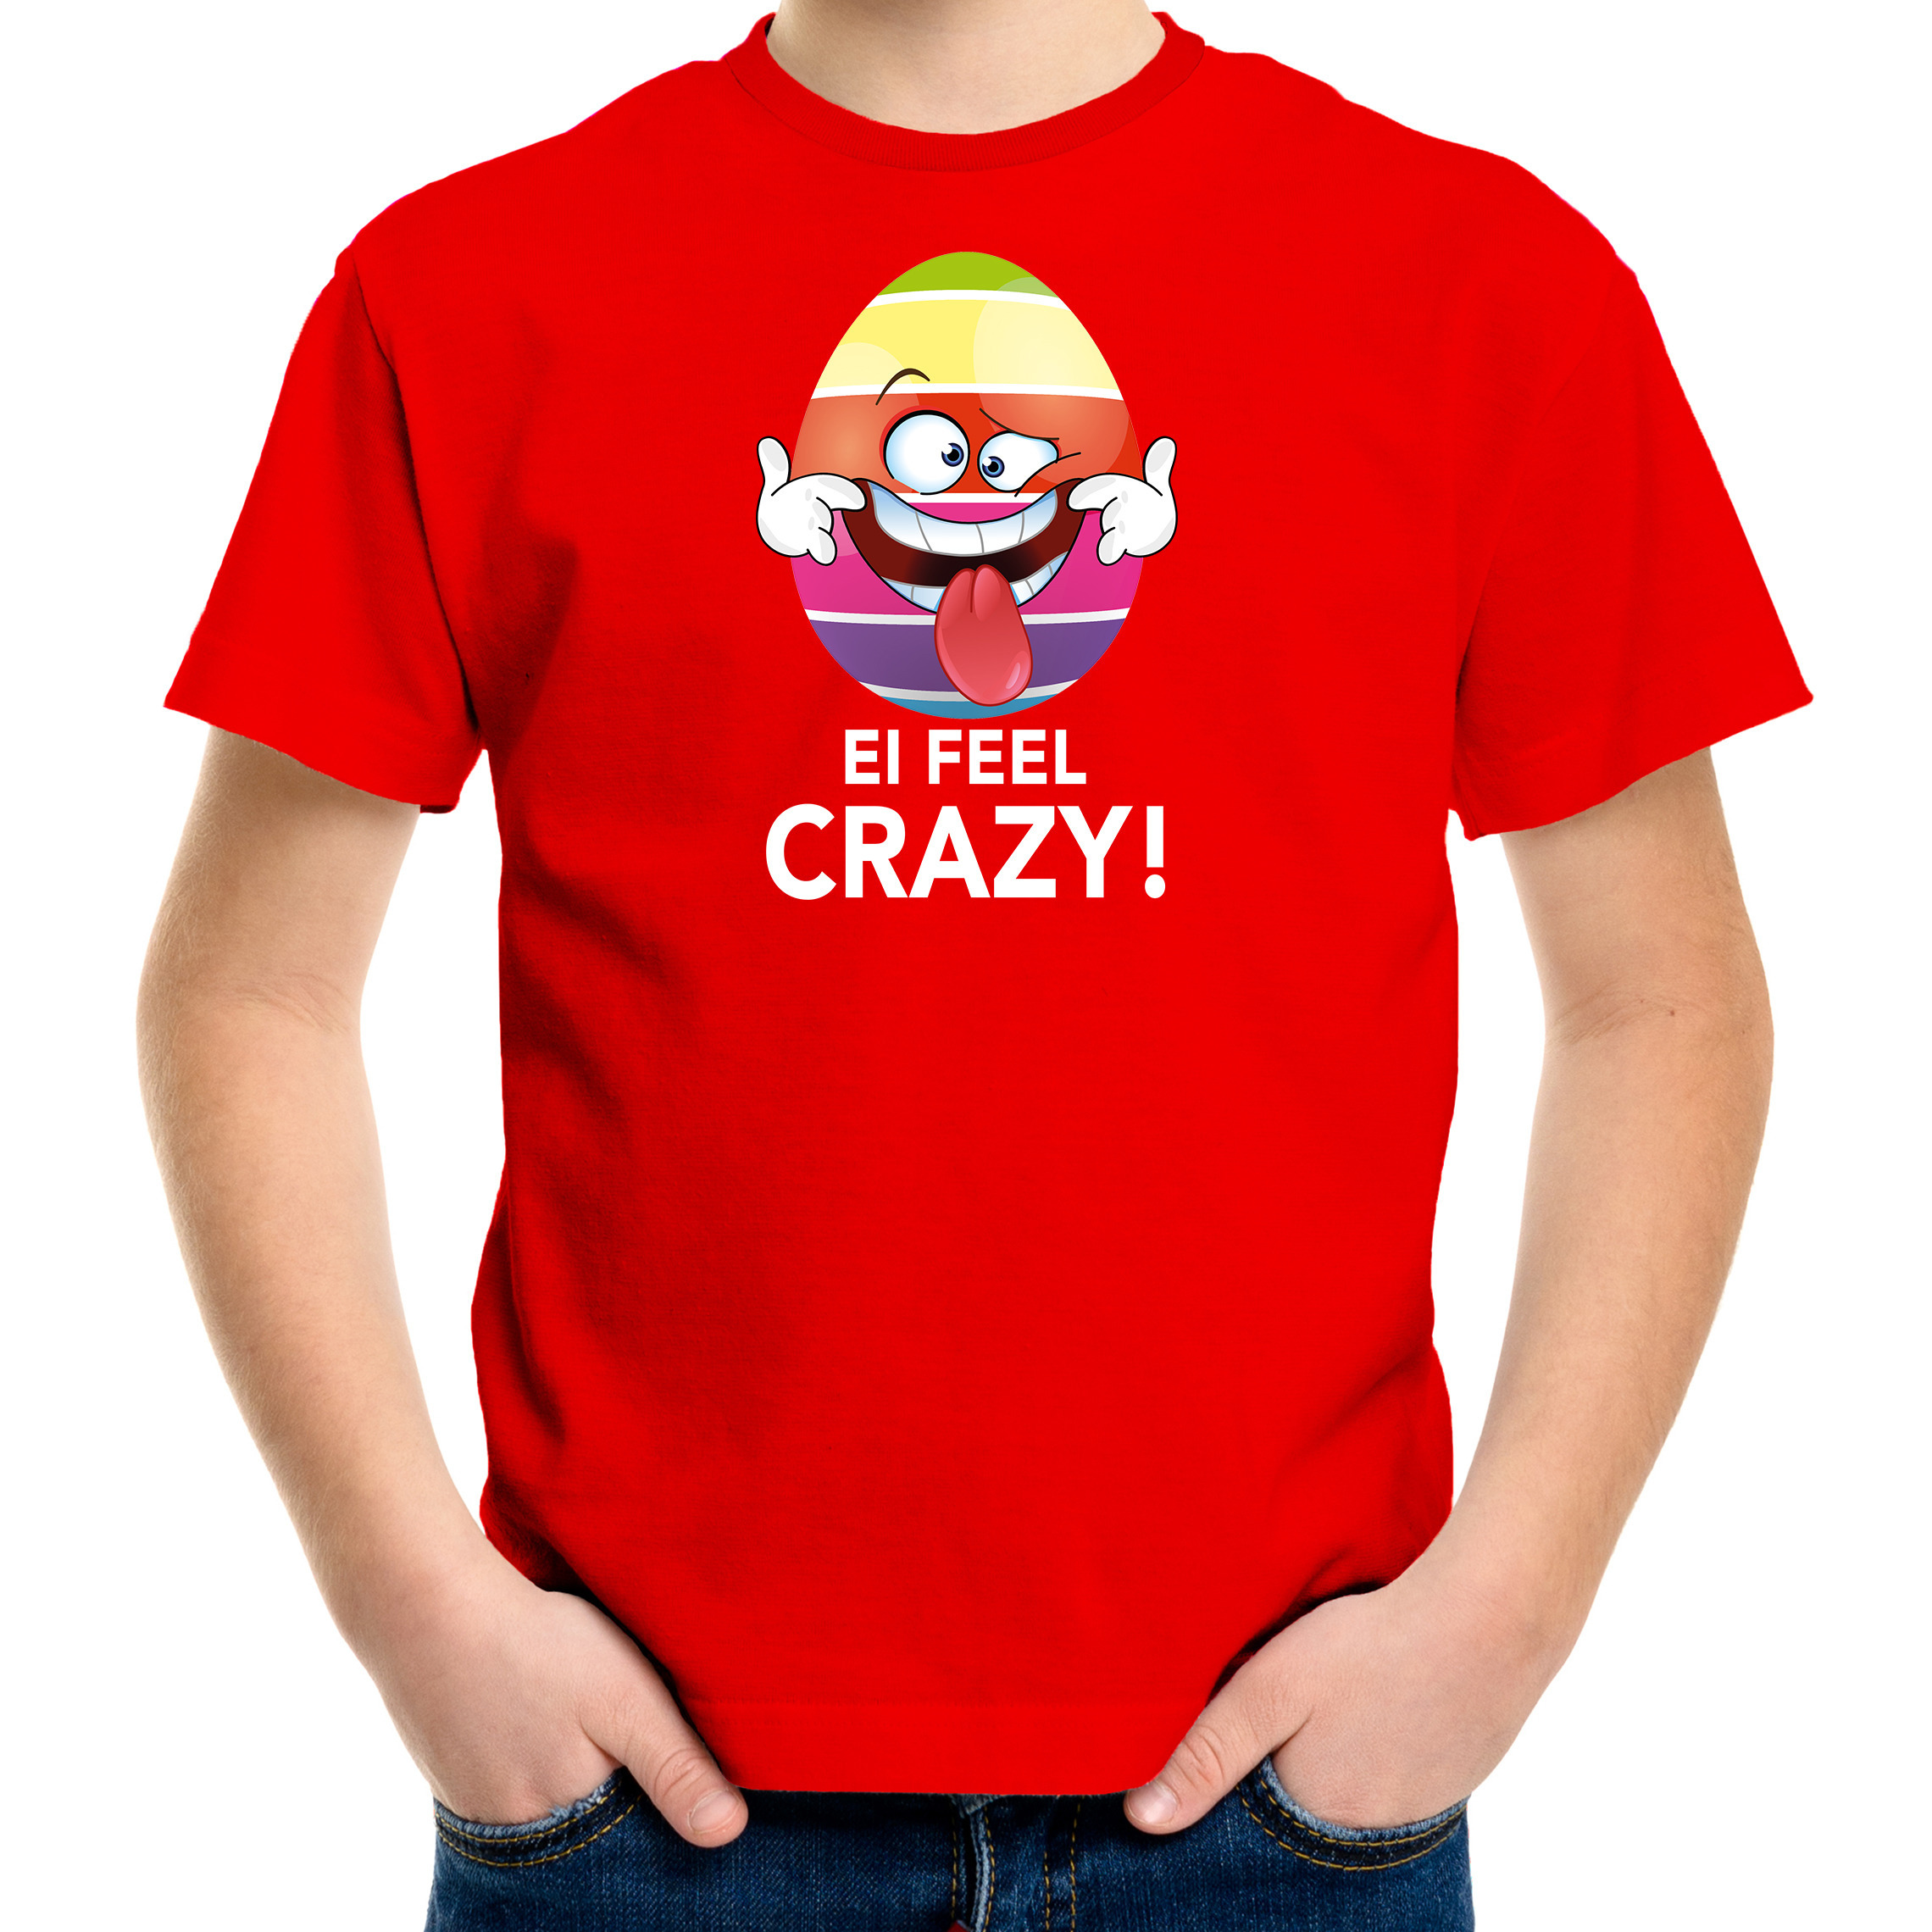 Vrolijk Paasei ei feel crazy t-shirt rood voor kinderen Paas kleding-outfit